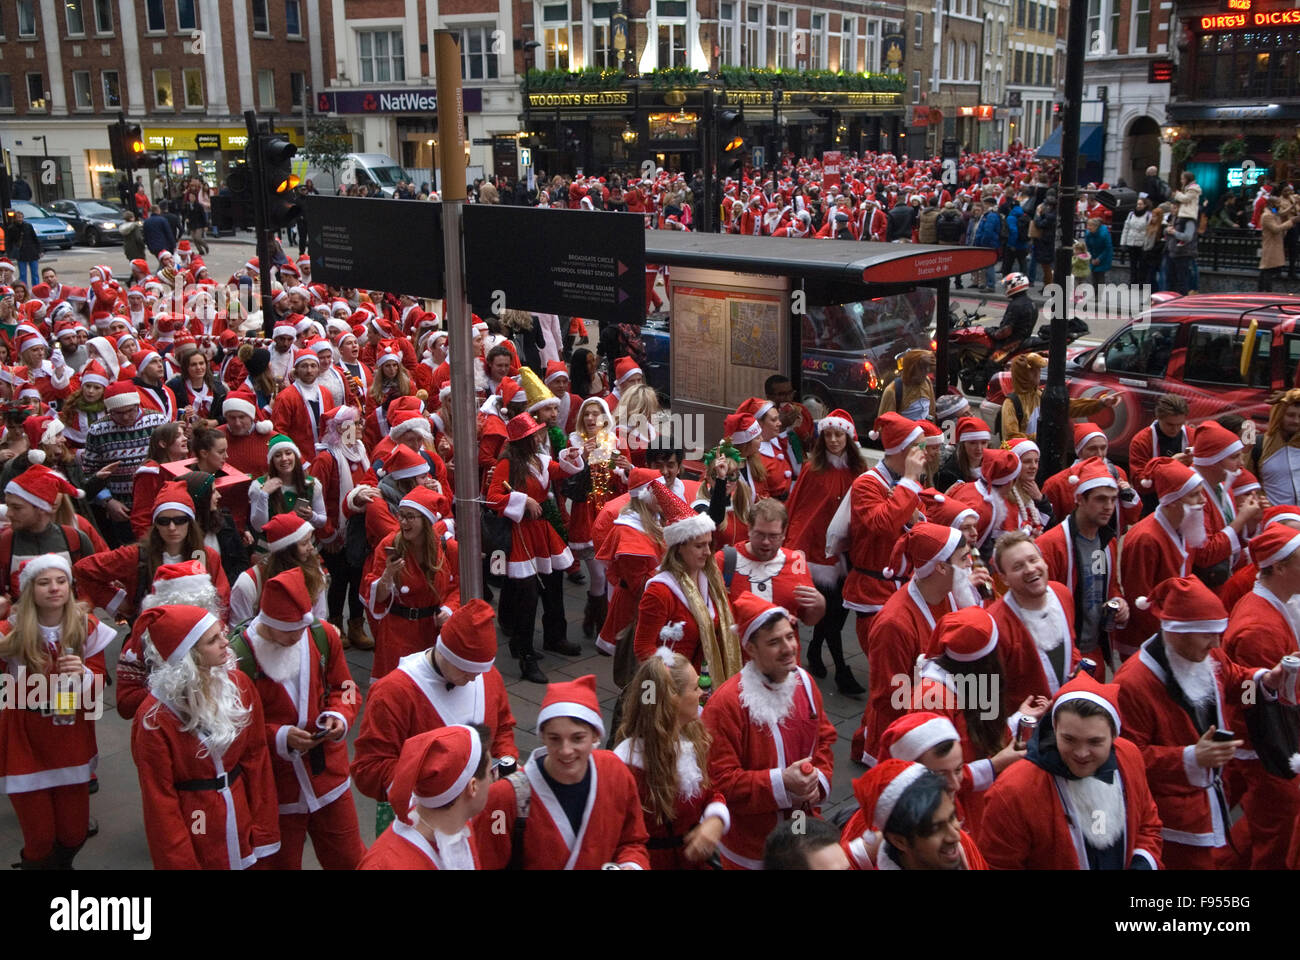 SantaCon Grand groupe de jeunes dans l'humeur festive de Noël, se rencontrer devant Liverpool Street Station ville centrale de Londres Royaume-Uni des années 2015 2010 Angleterre HOMER SYKES Banque D'Images